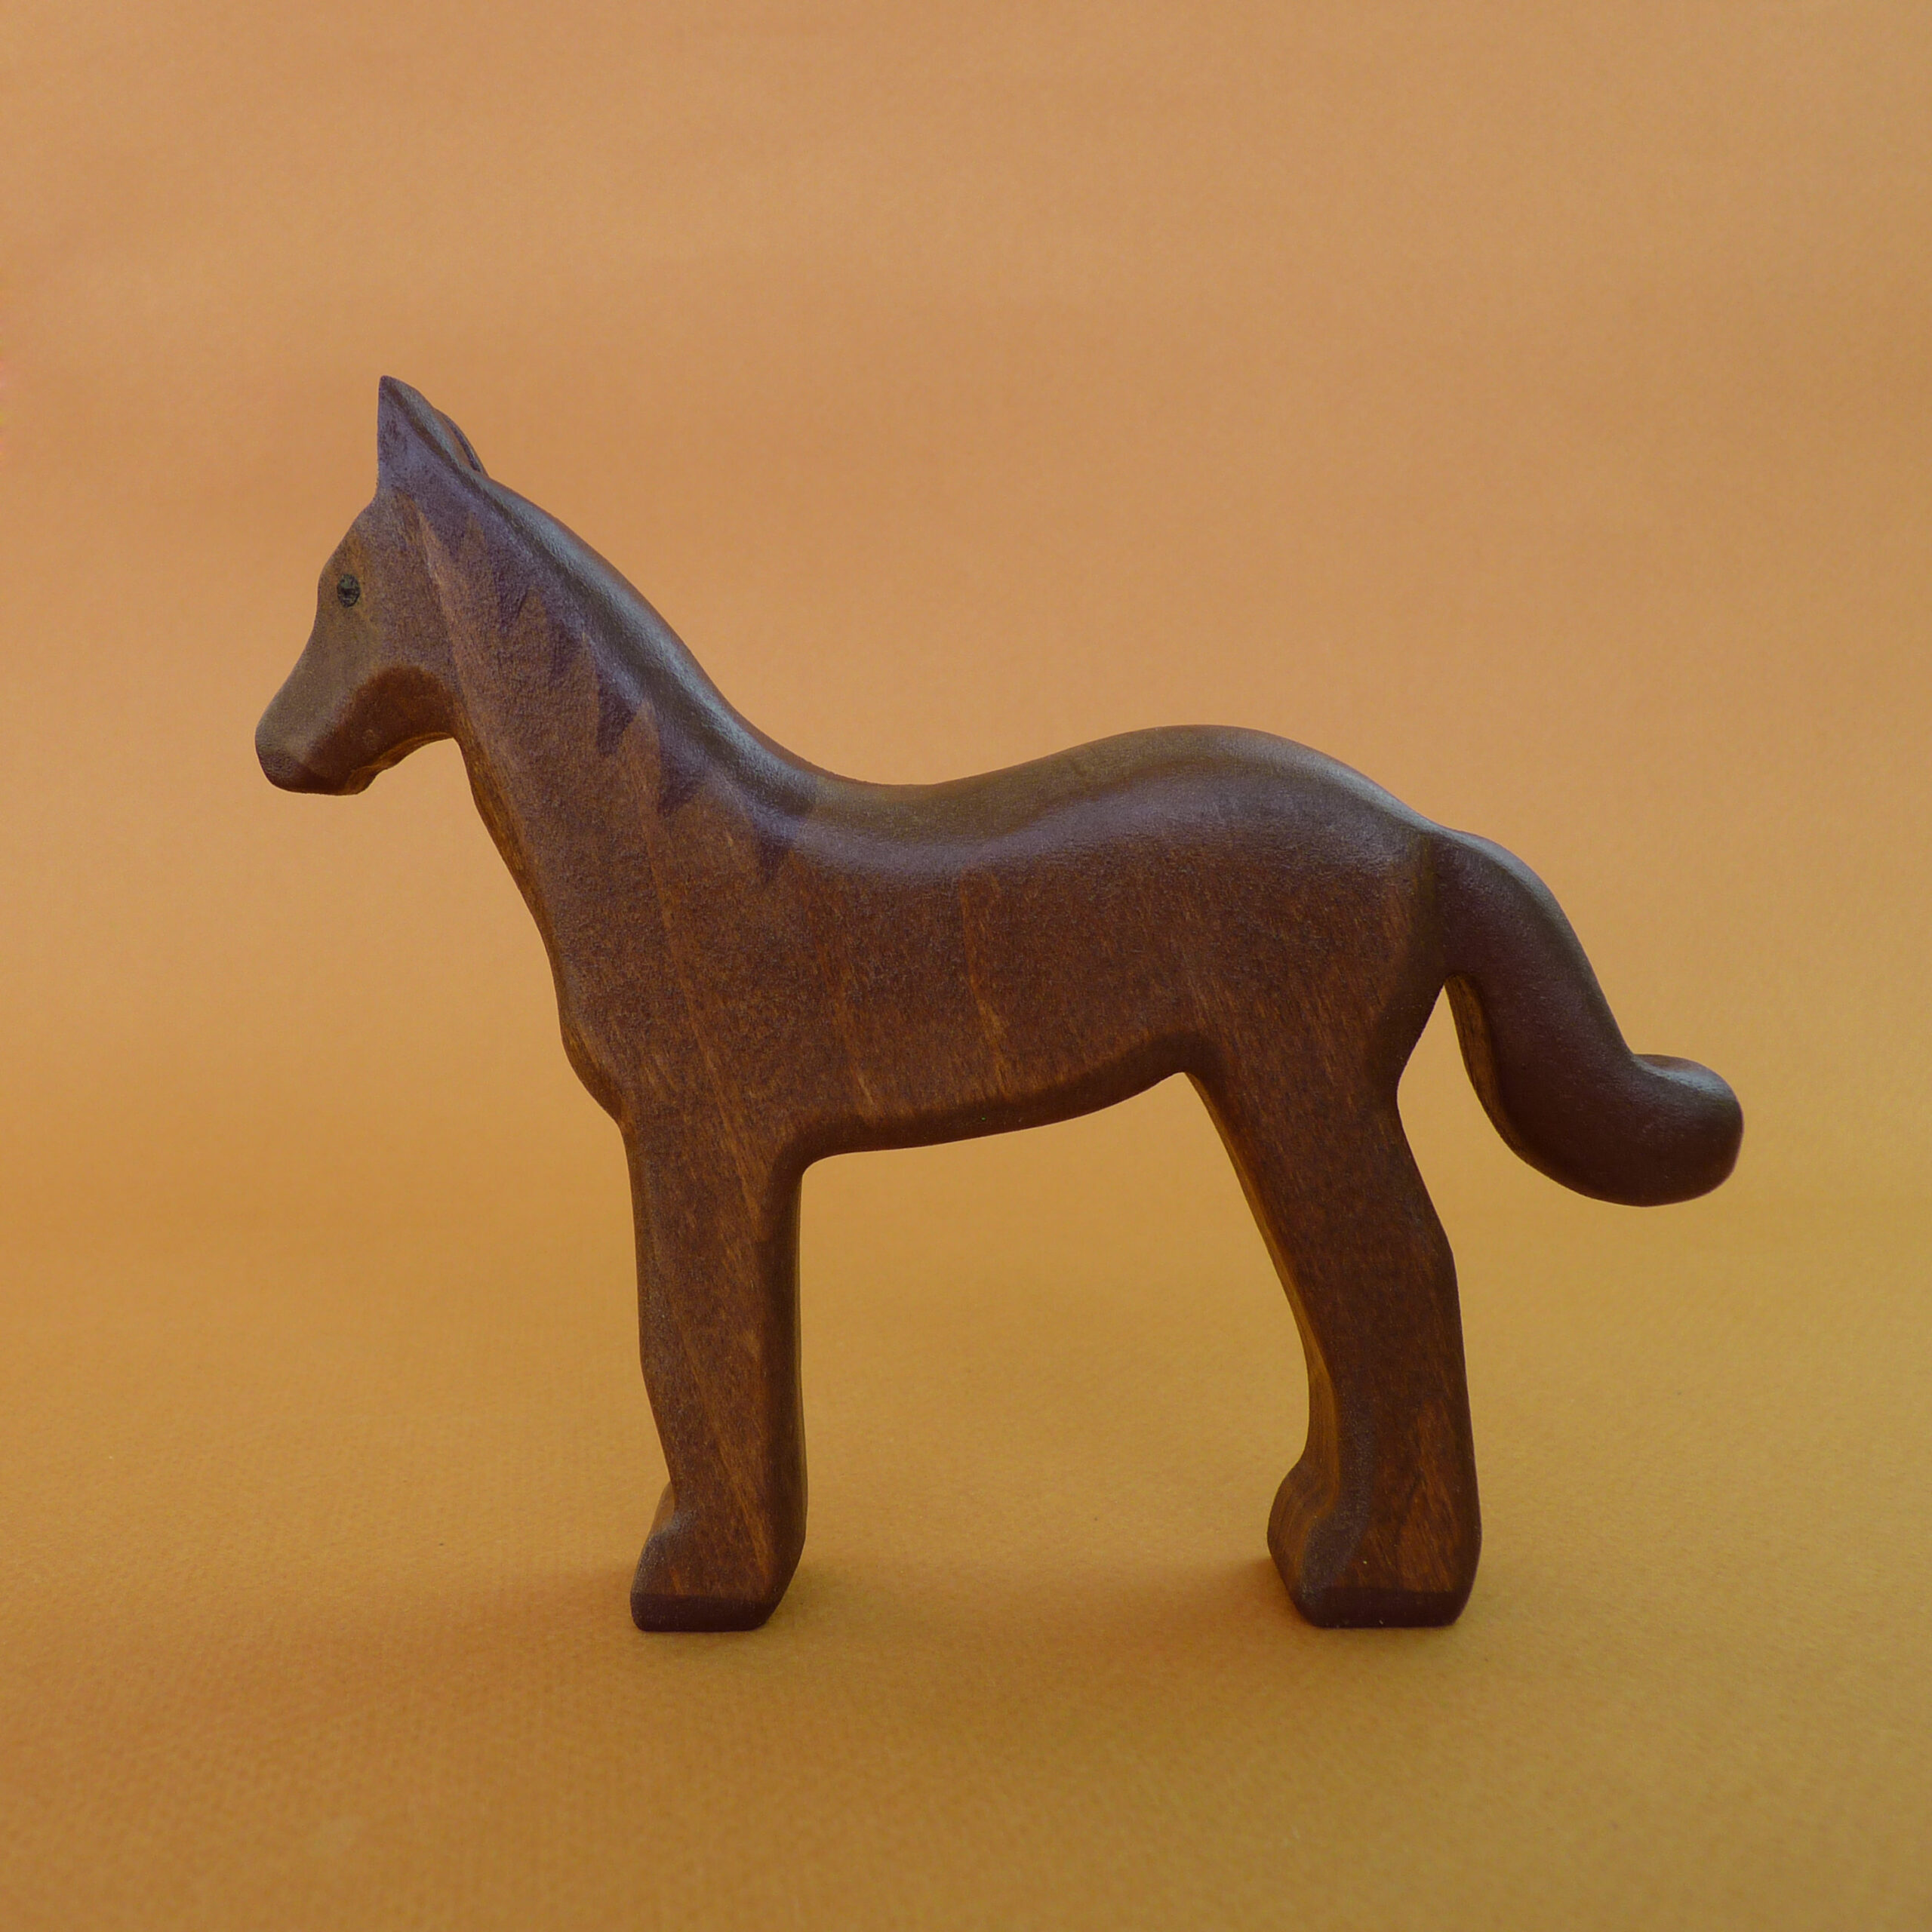 Лошадка на 7. Деревянная лошадь на подставке фигурка. Лошадка деревянная маленькая 1 см для творчества. Голова лошади из дерева. Набор лошадей.